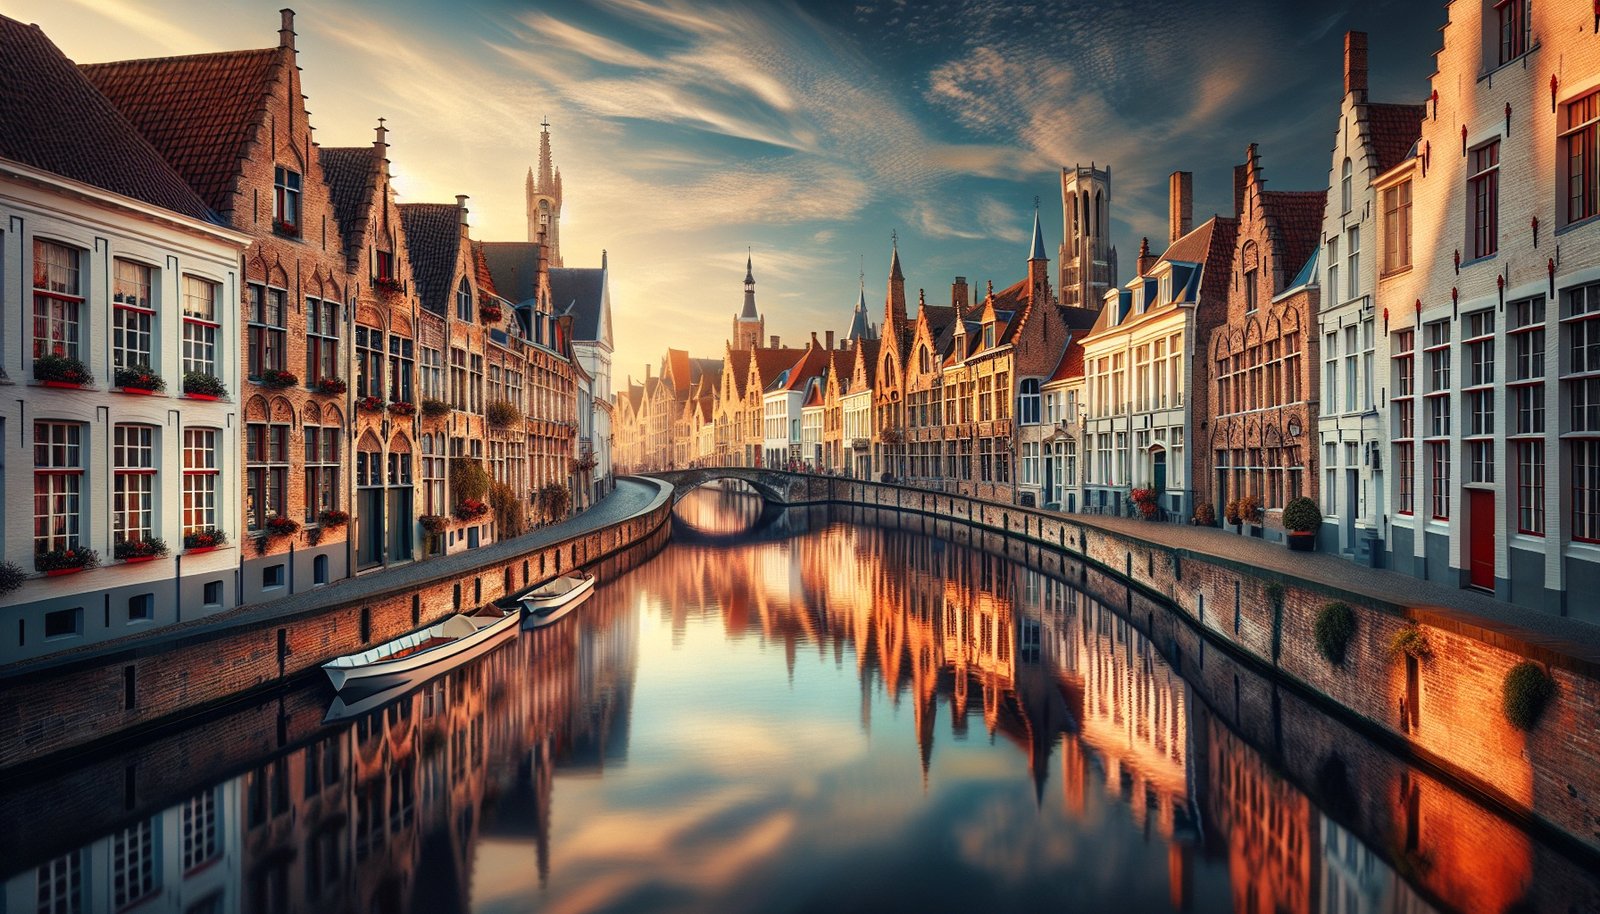 Illustration of Brugge